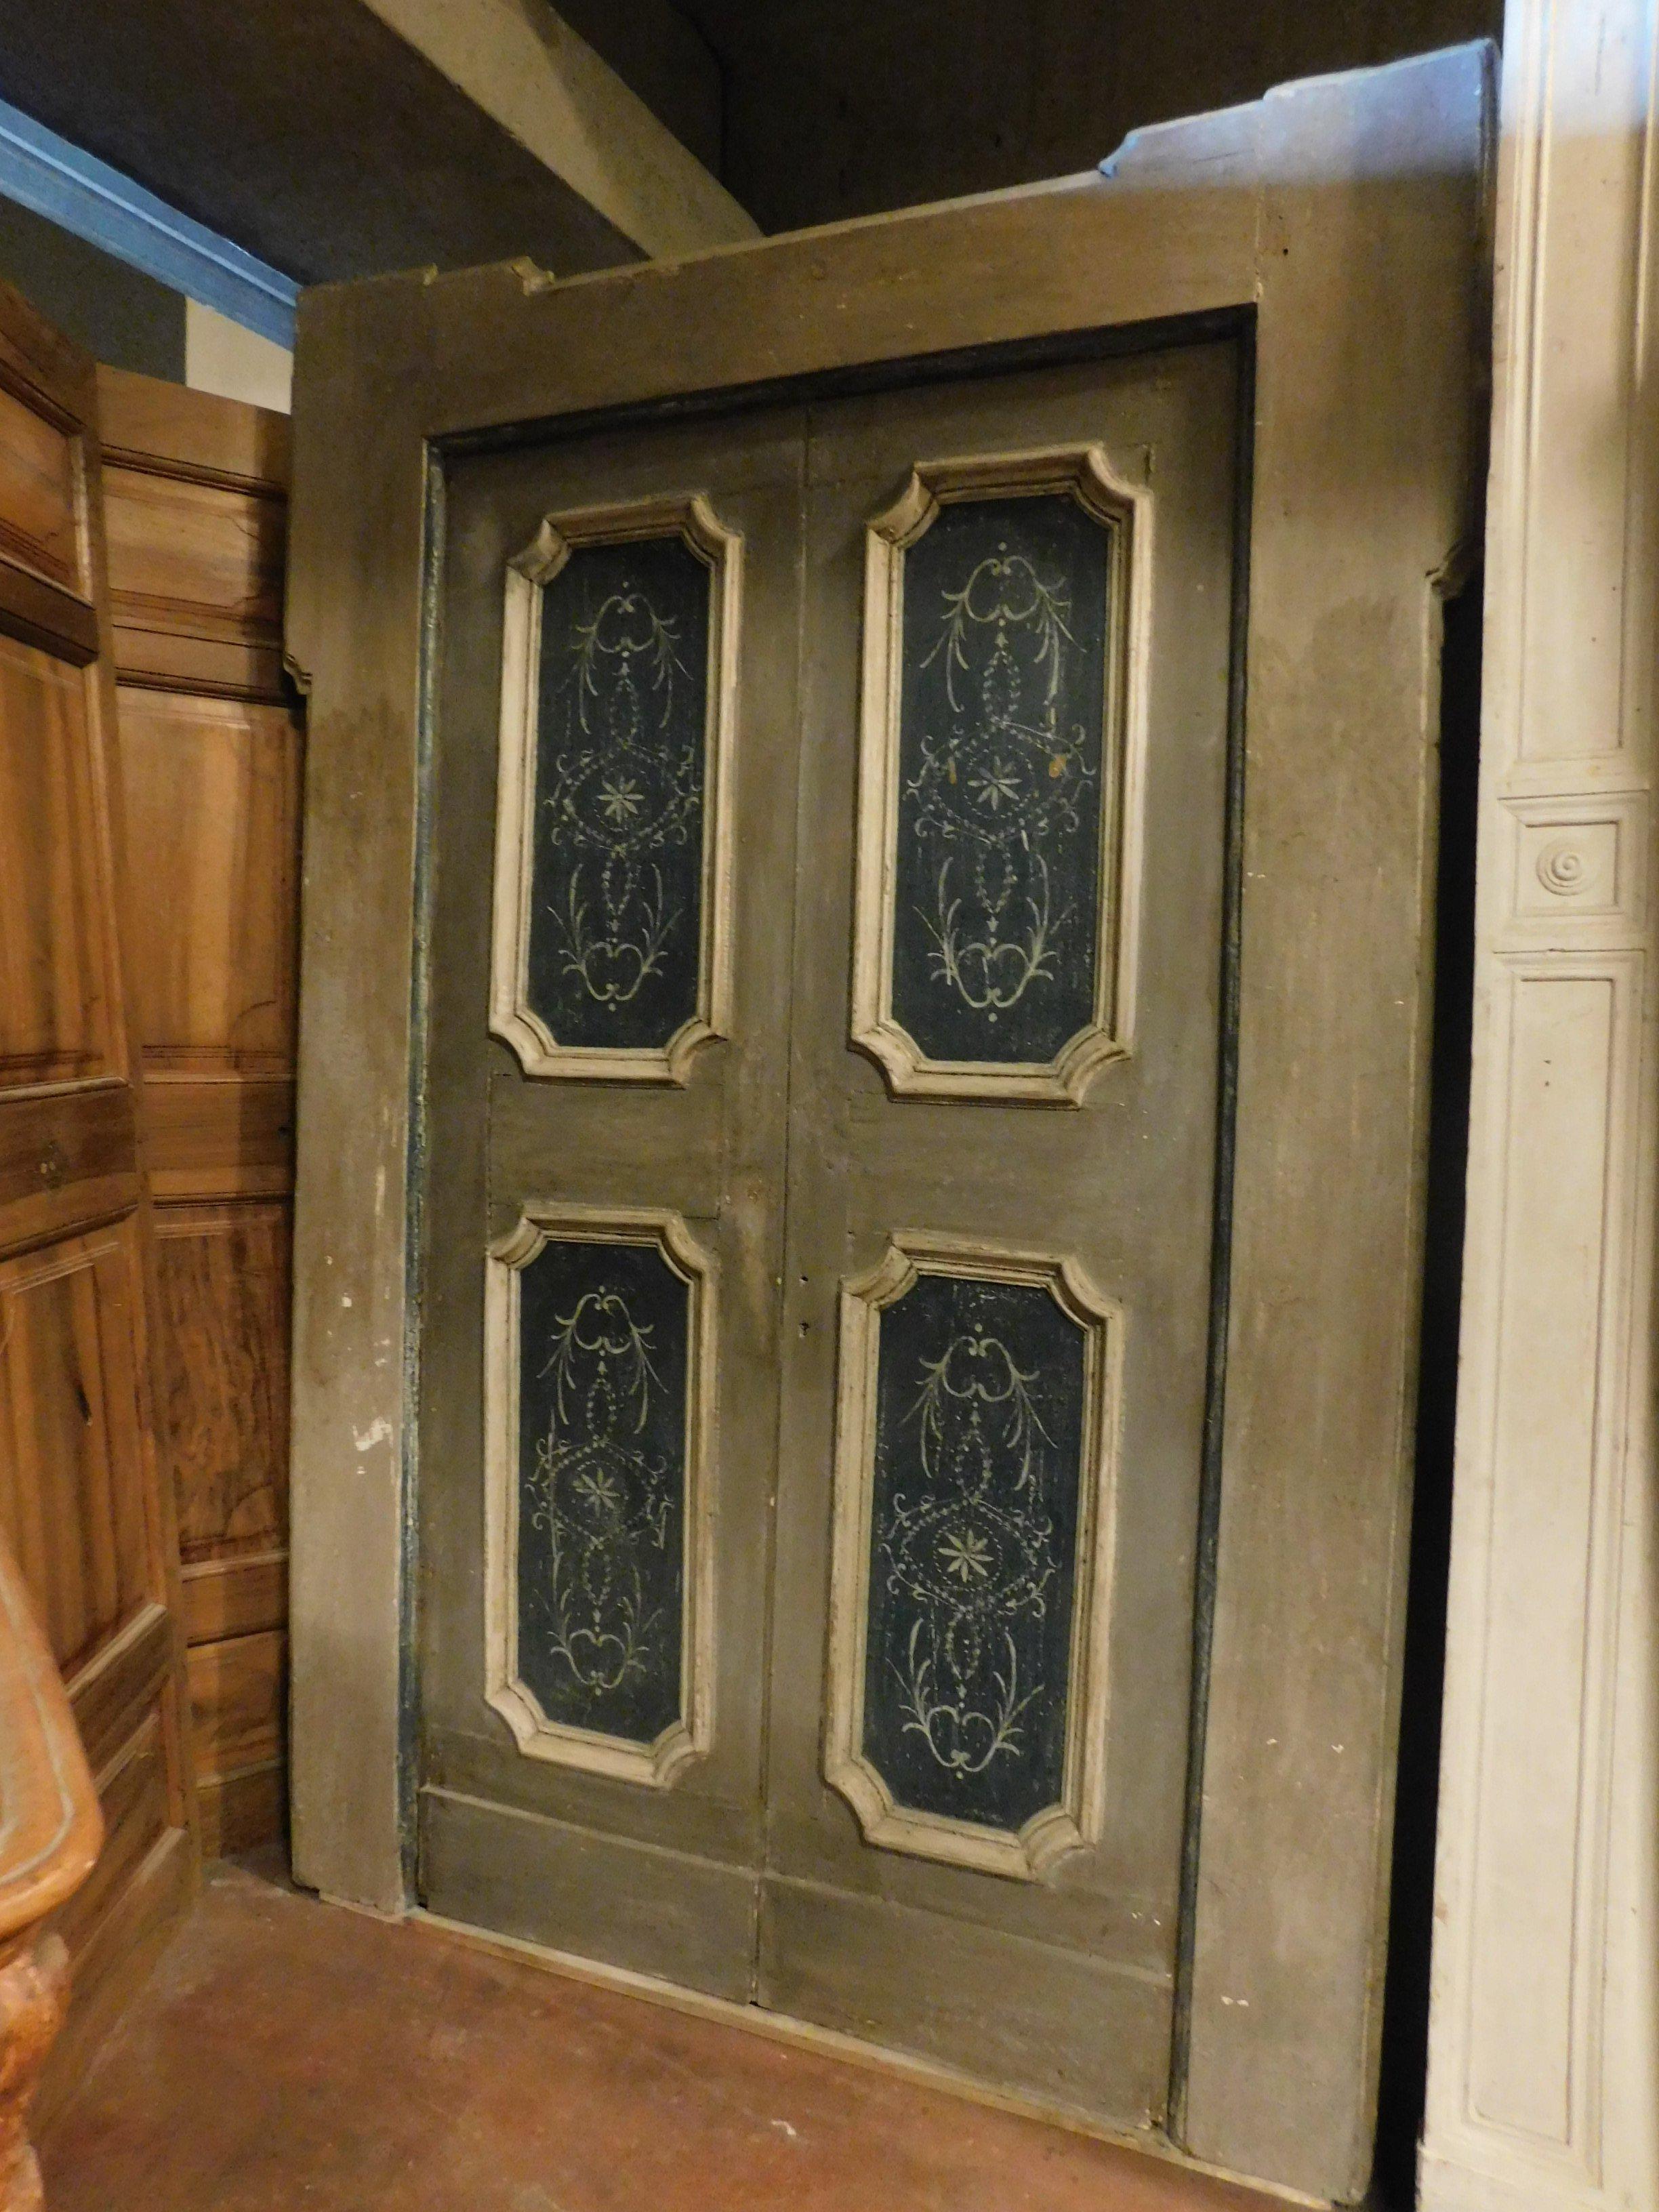 Antike Doppeltür, lackiert auf einem grauen Hintergrund, mit weißen Molure und Paneele mit handgemalten blauen rustikalen, Doppel-Flügel mit Original-Rahmen, in den späten 1700er Jahren in Italien hergestellt.
Zu überprüfende Schlösser und Griff zu